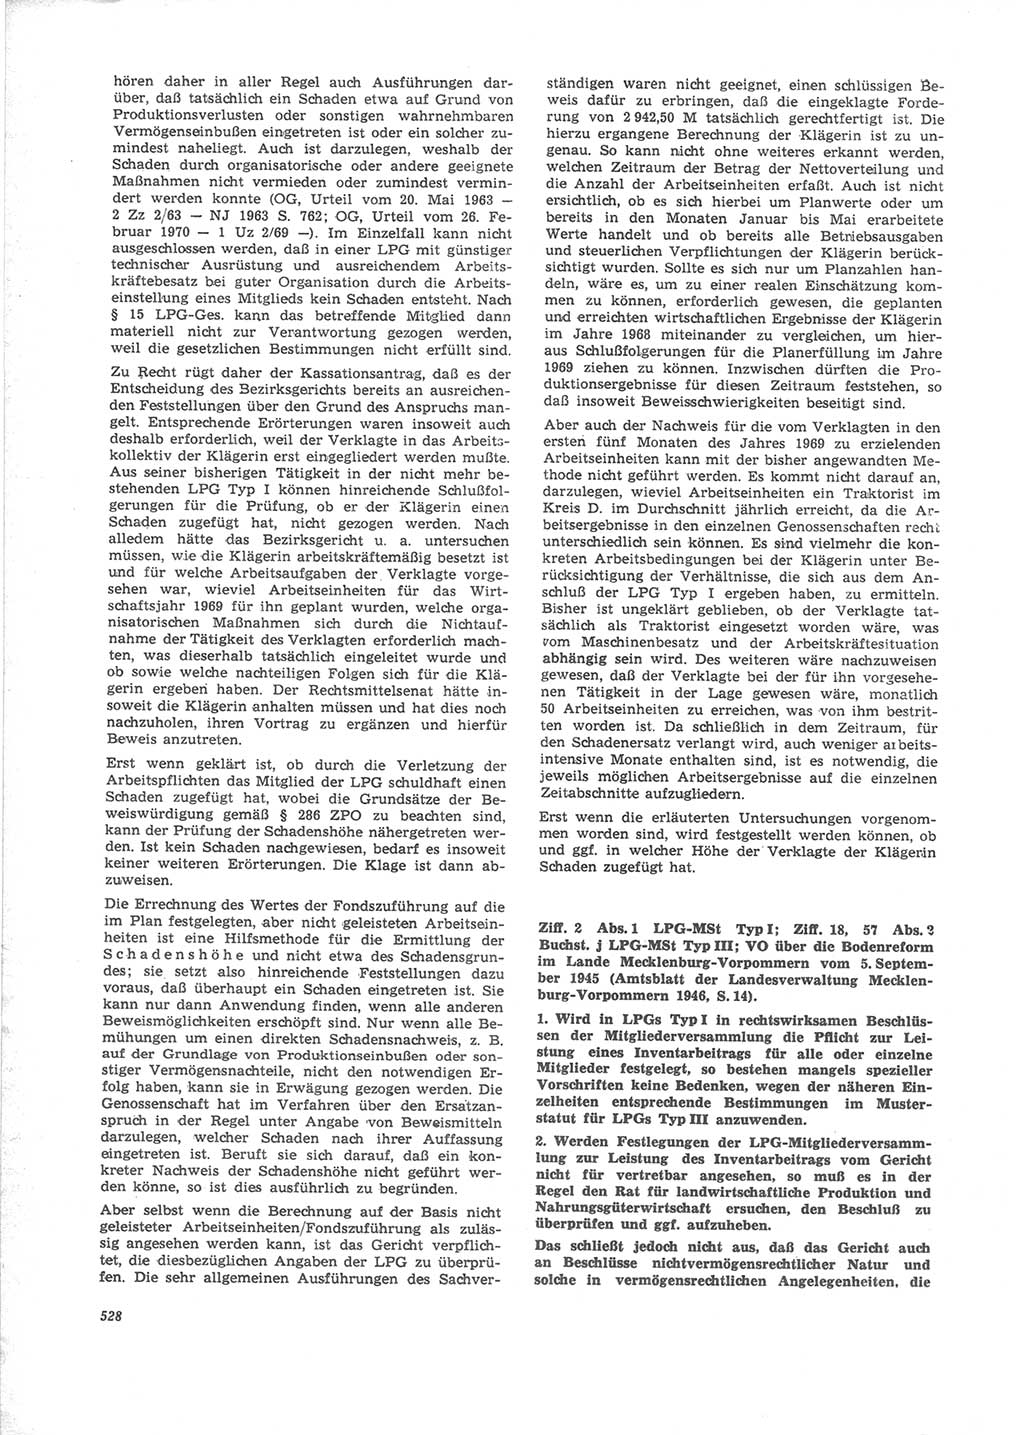 Neue Justiz (NJ), Zeitschrift für Recht und Rechtswissenschaft [Deutsche Demokratische Republik (DDR)], 24. Jahrgang 1970, Seite 528 (NJ DDR 1970, S. 528)